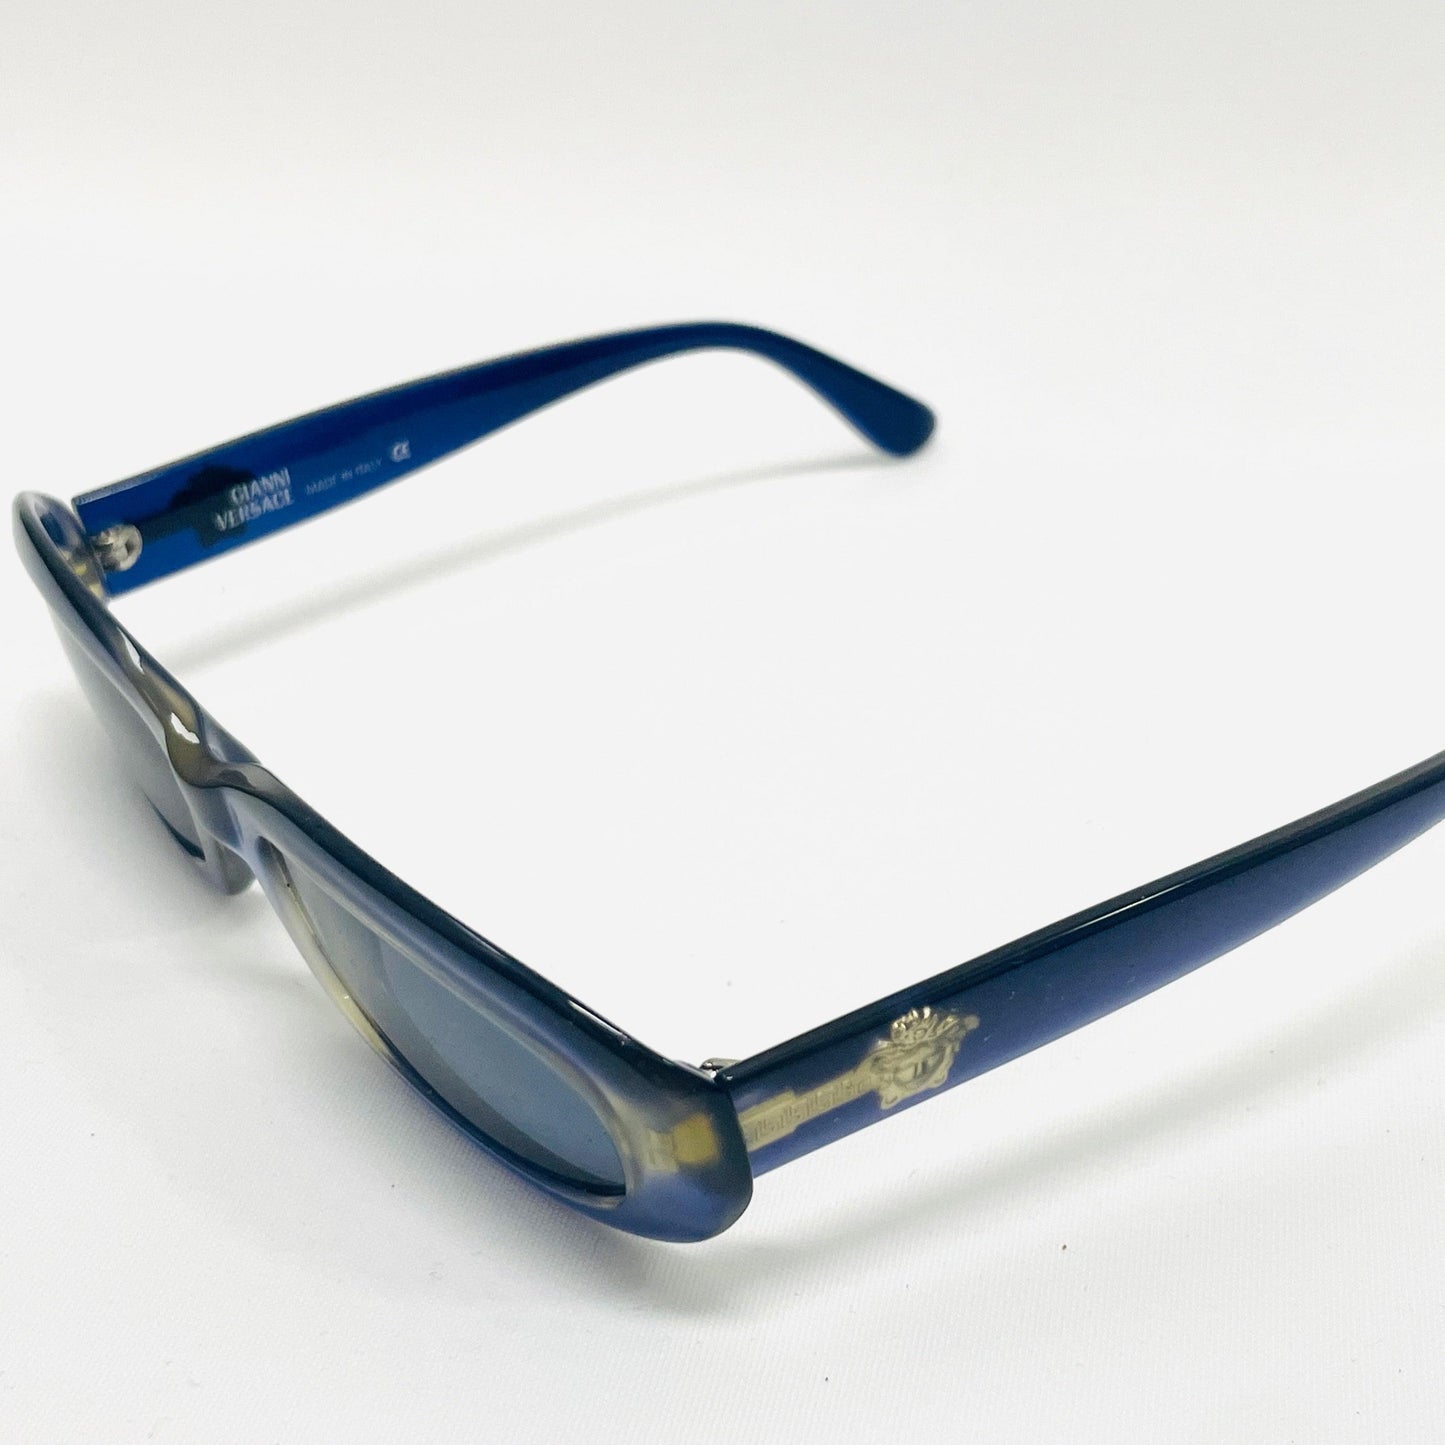 Vintage-Gianni-Versace-Sonnenbrille-Sunglasses-Model-308-Blue-Medusa  Alt-Text bearbeiten